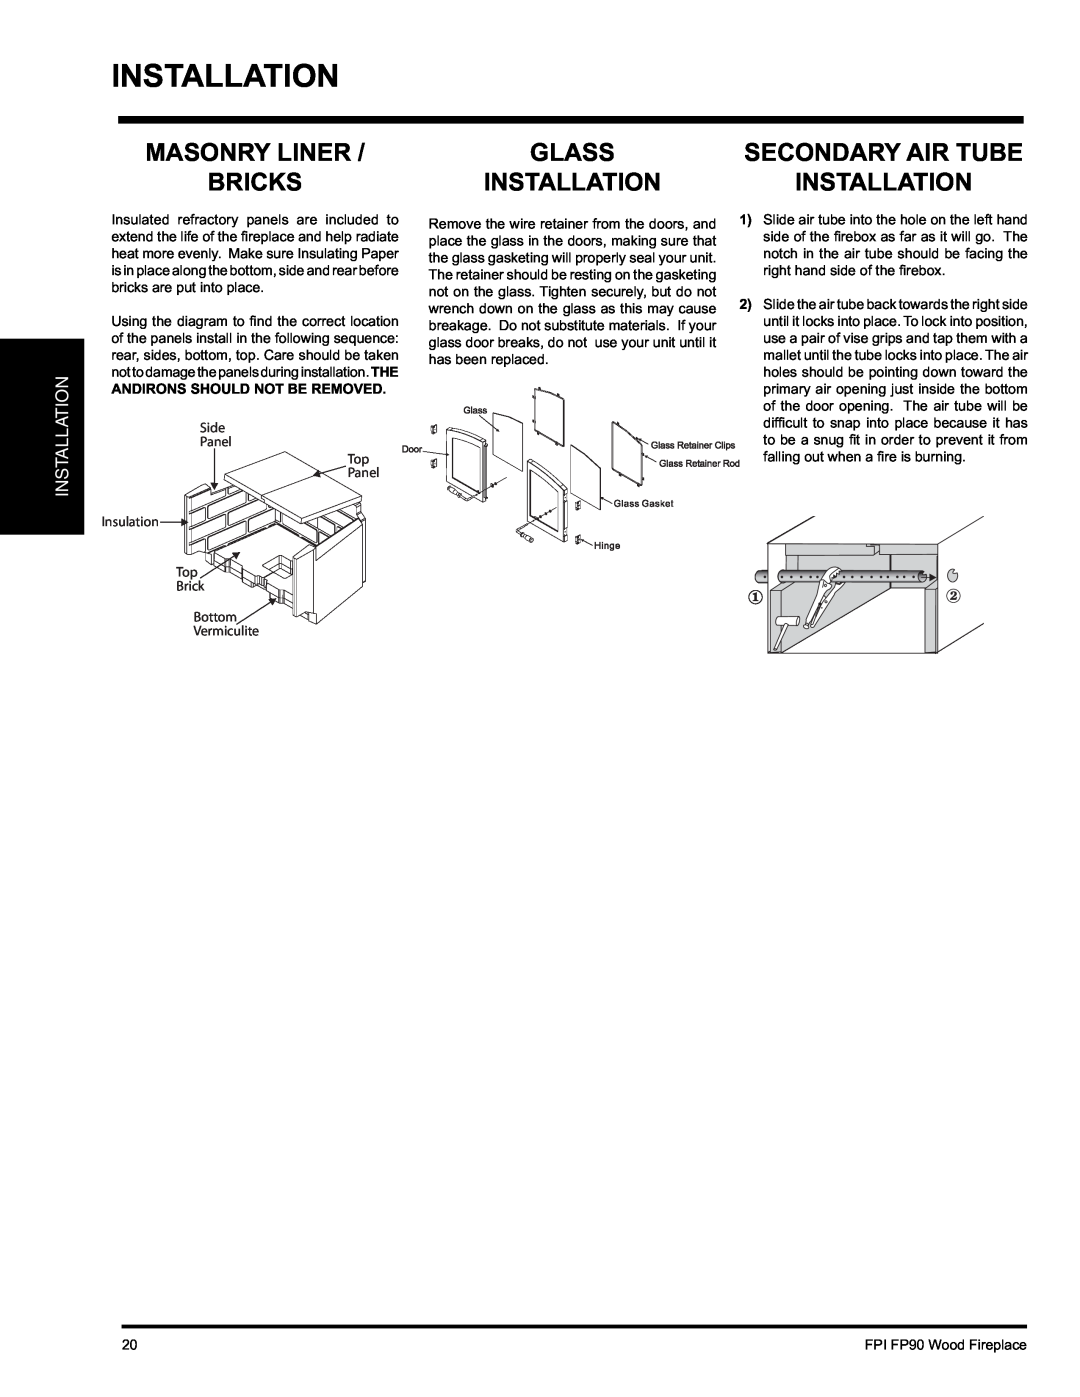 Regency FP90 installation manual Masonry Liner Bricks, Glass, Secondary Air Tube, Installation 